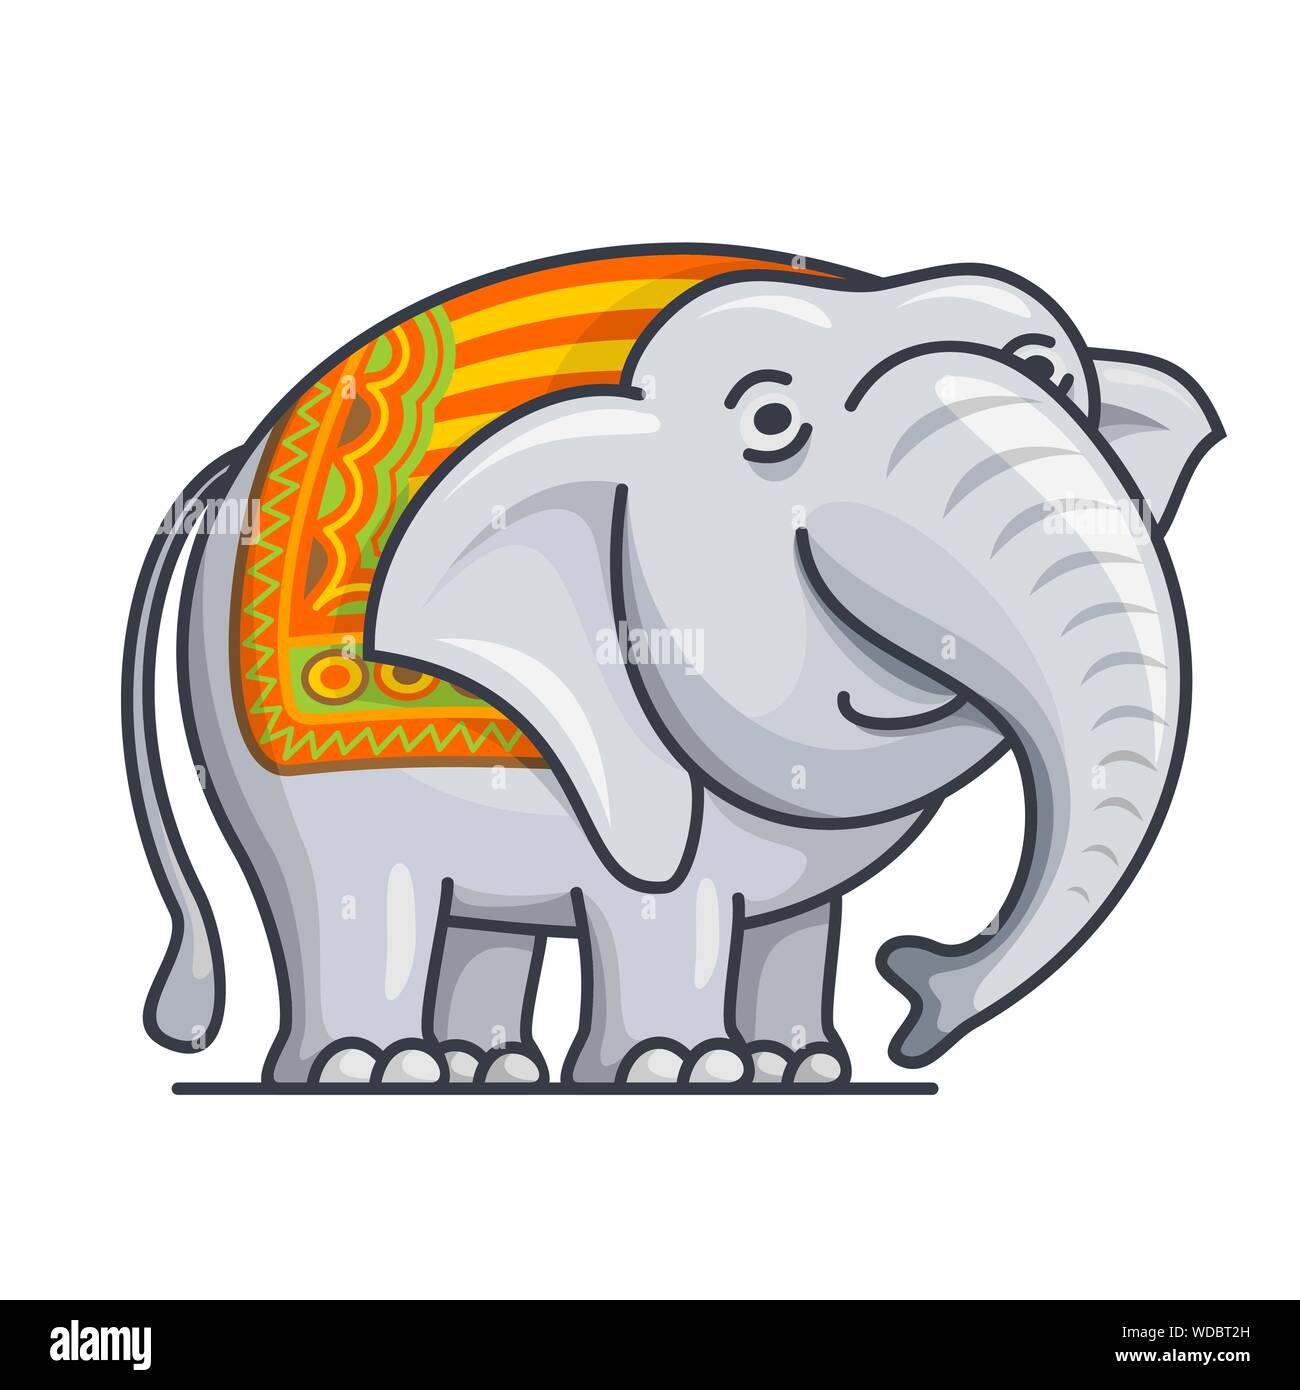 Illustrazione Vettoriale di Cartoon carino elephant close-up su sfondo bianco. Illustrazione Vettoriale